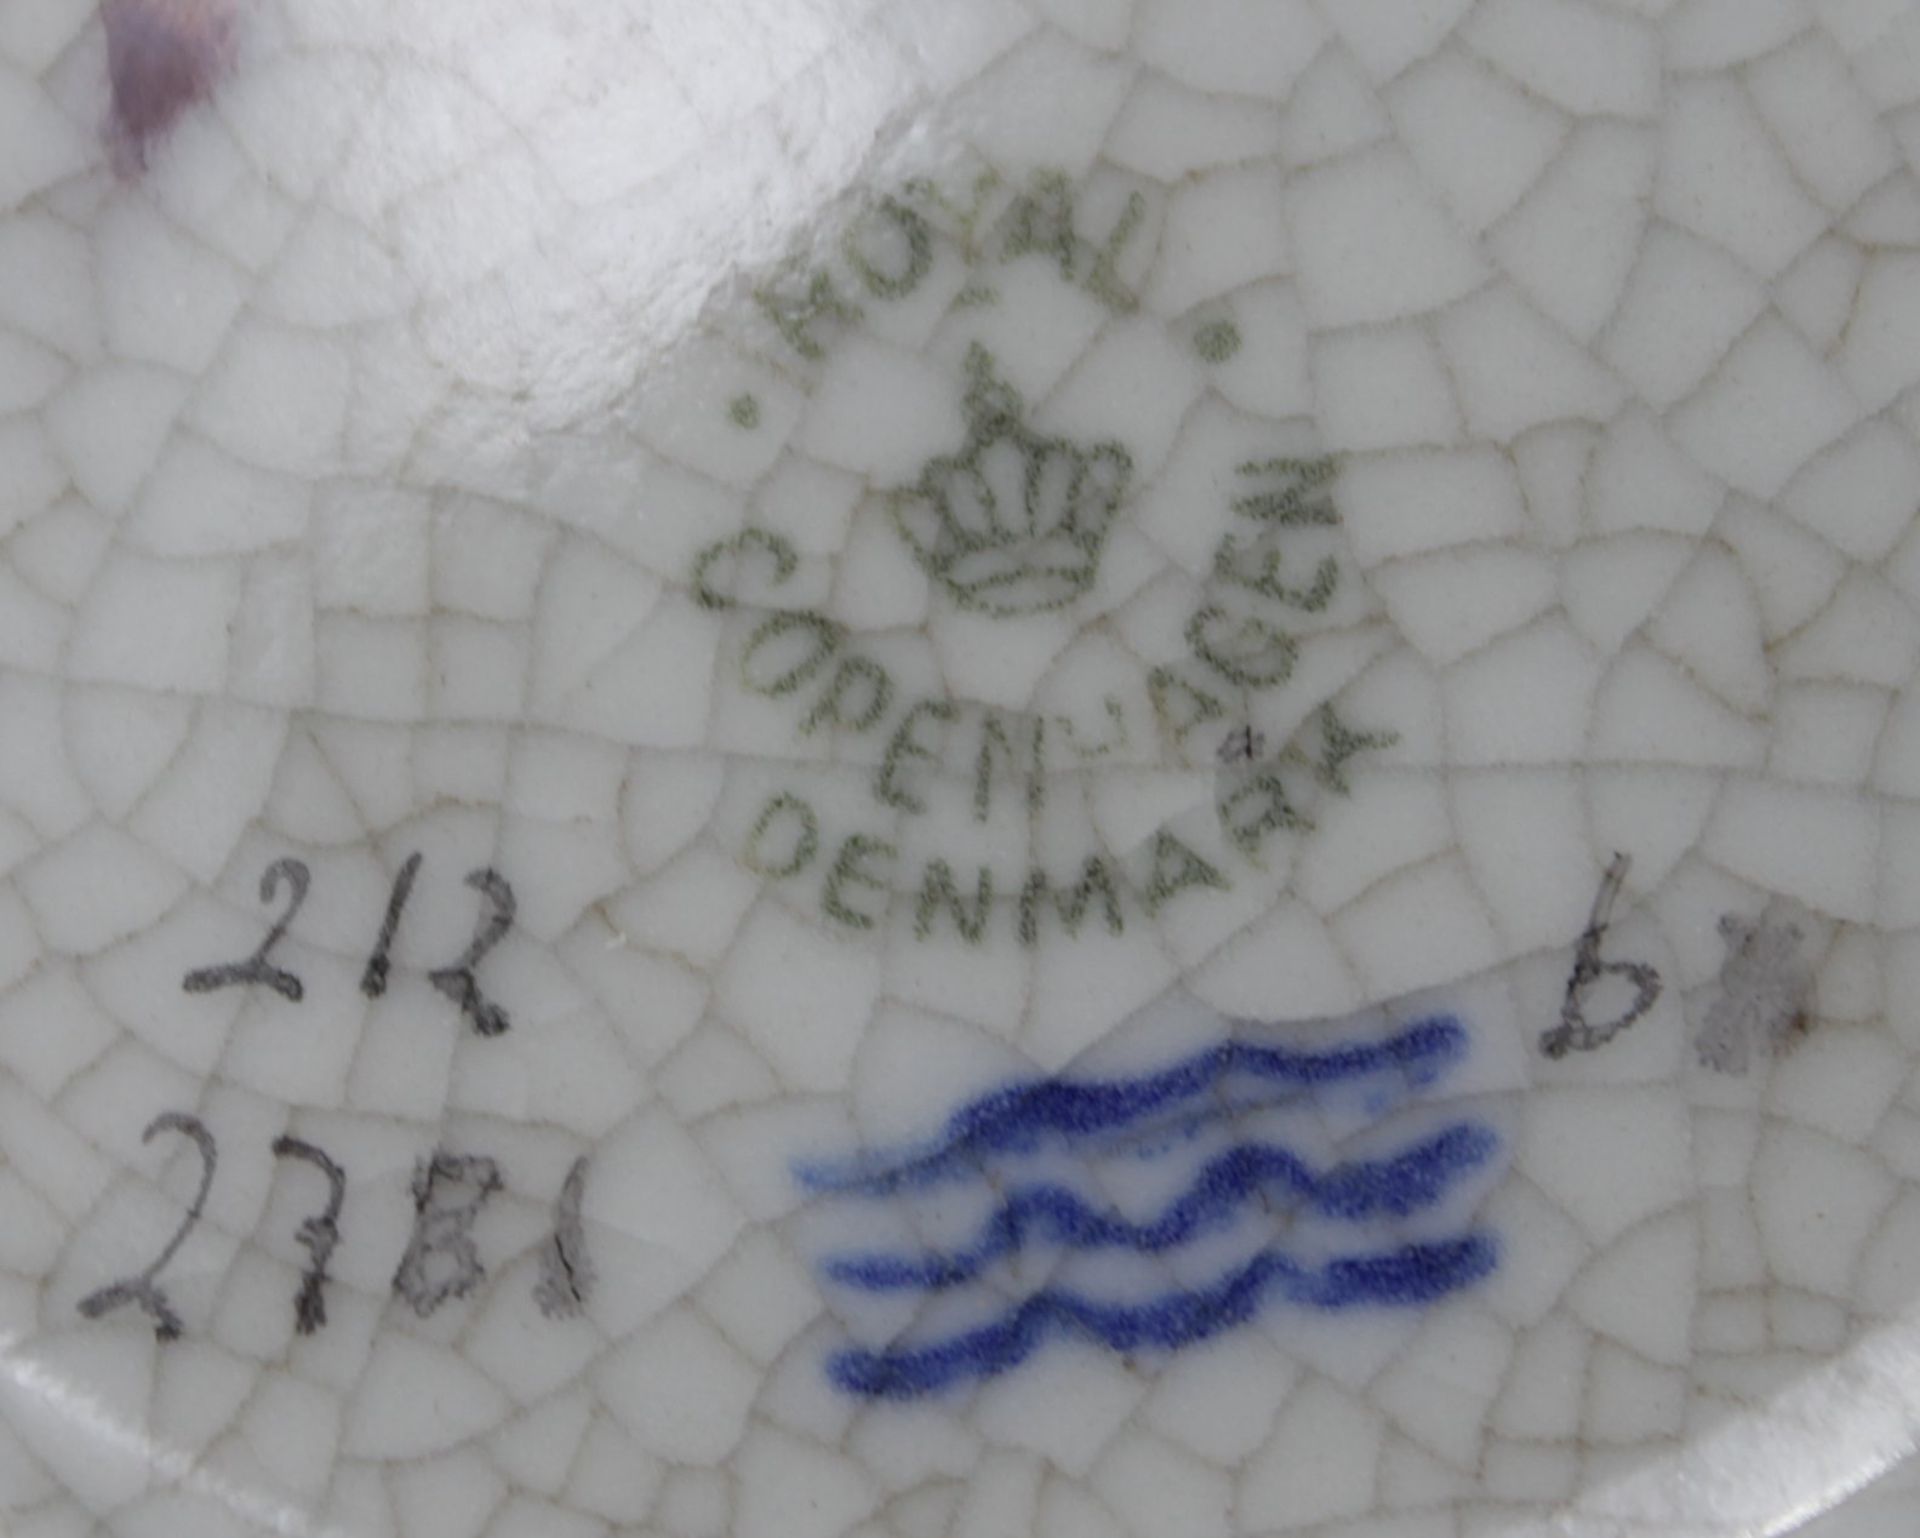 Deckelvase, Royal Copenhagen, Craquelée, Nr. 2781, Deckel mit plast. Frucht, H-23,5cm. - Bild 3 aus 3